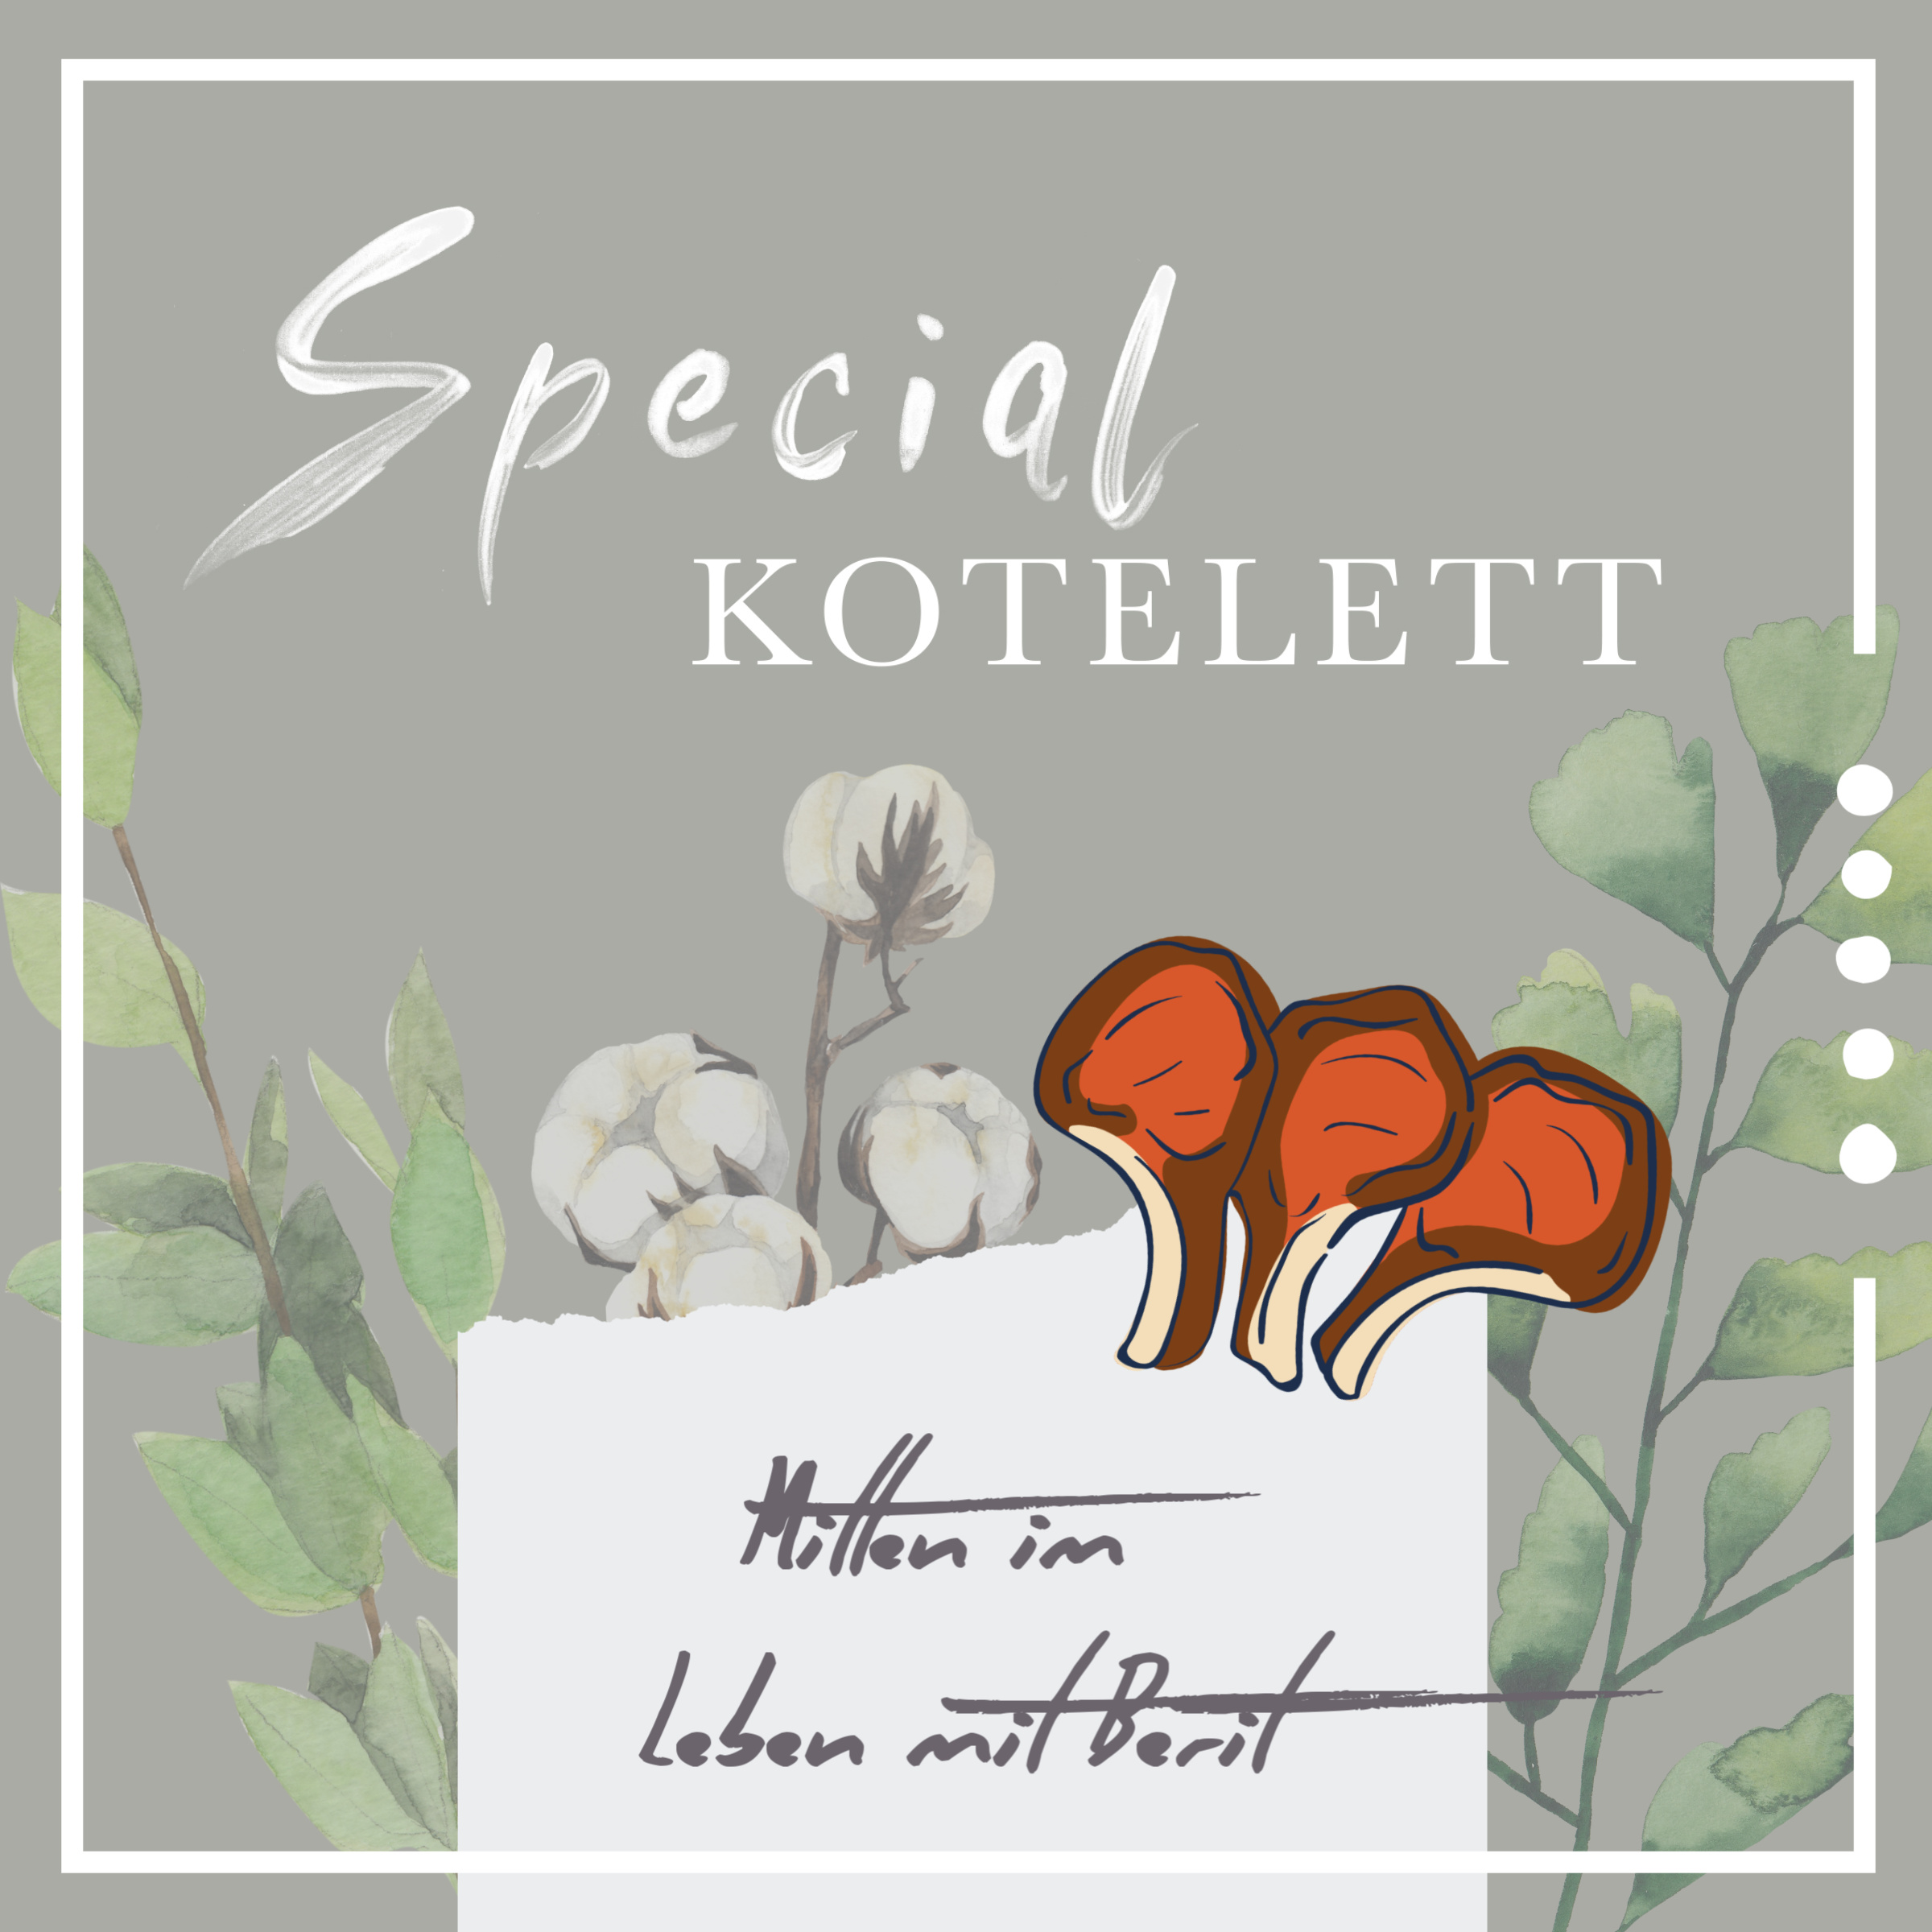 Special "Kotelett Talk mit Berit"